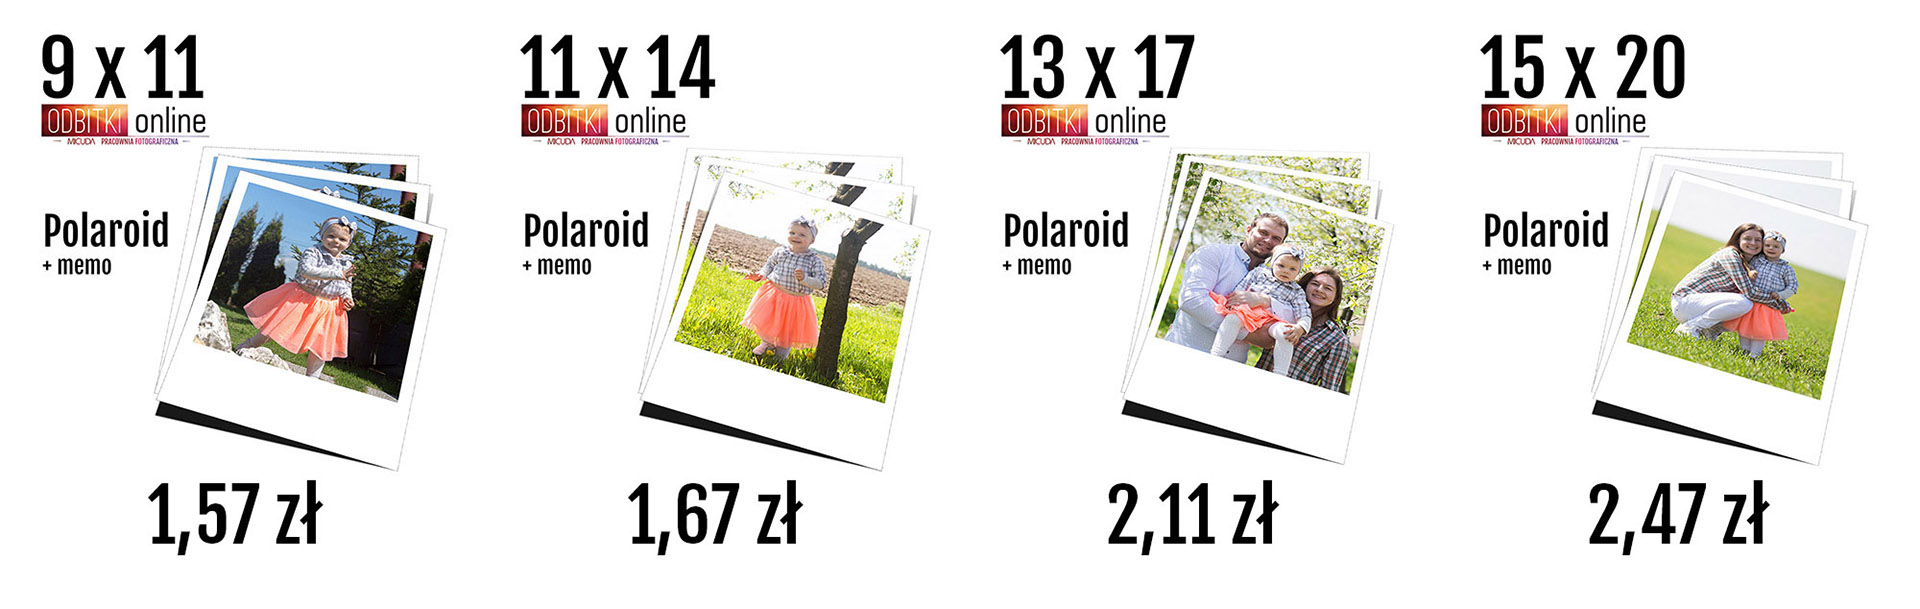 Odbitki Online Polaroid Memo - Pracownia Fotograficzna Micuda